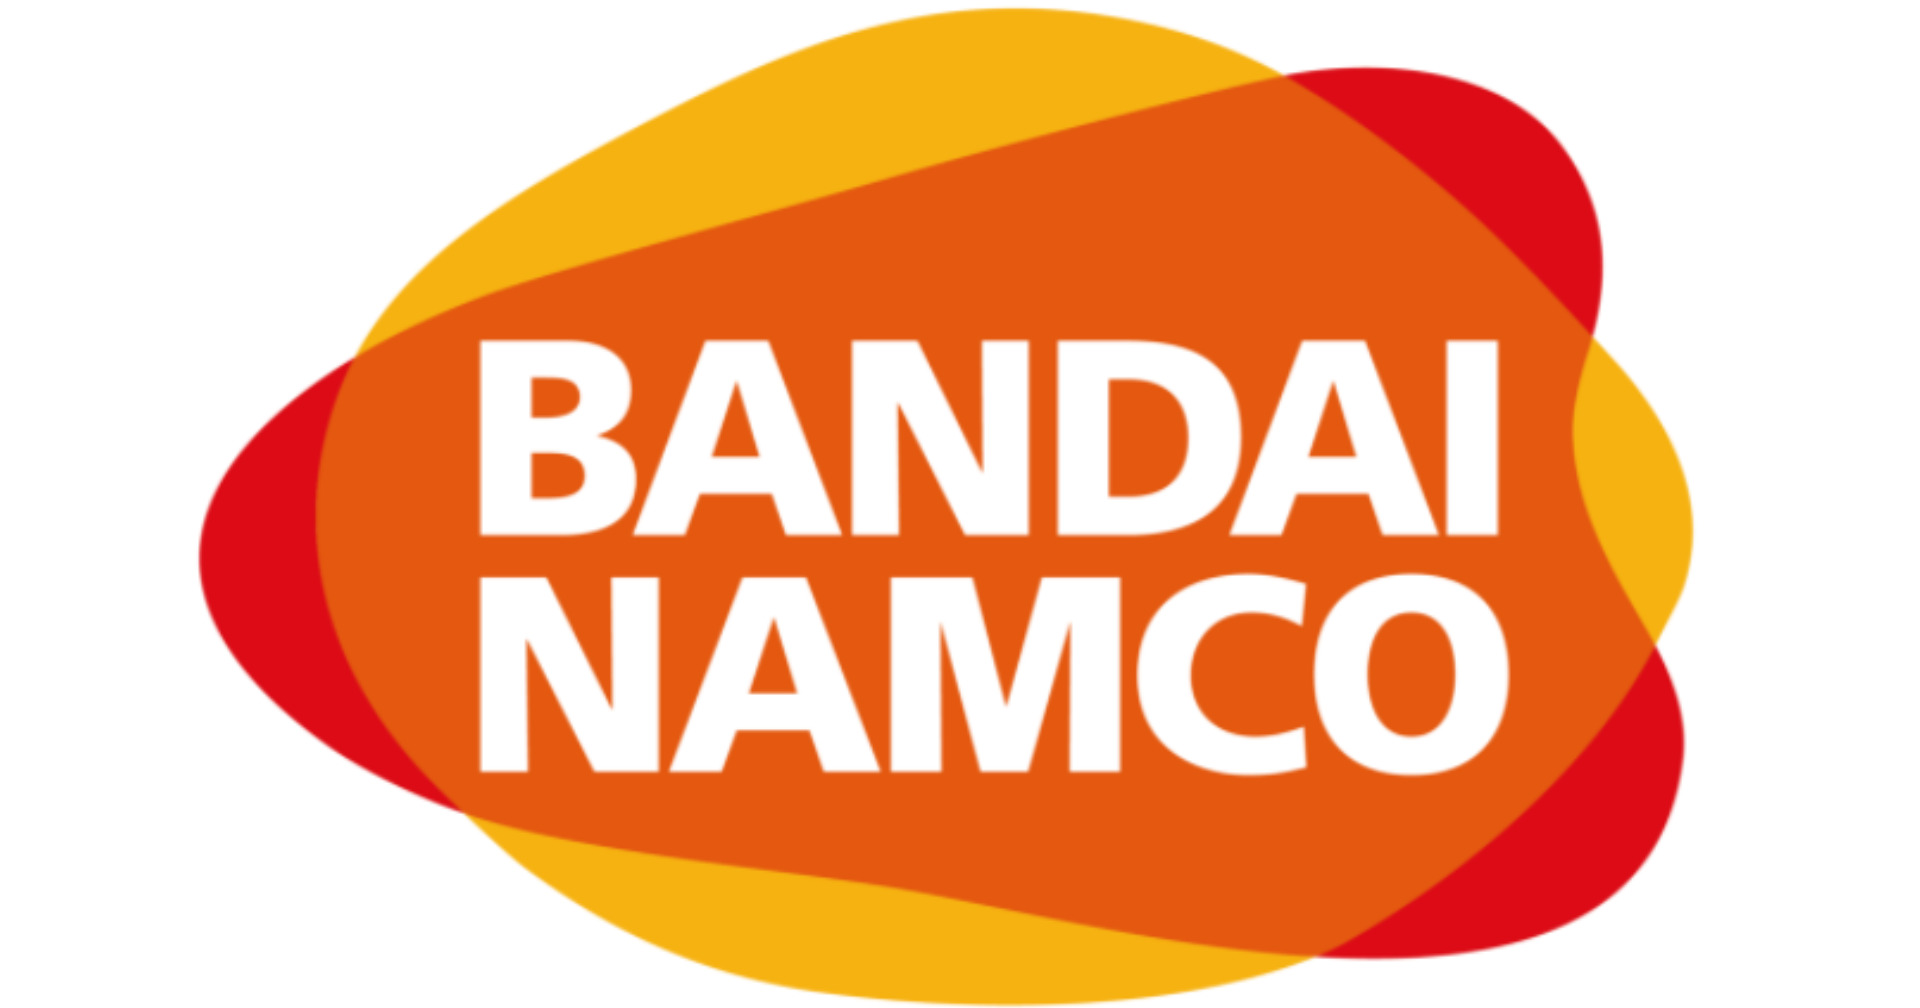 Bandai Namco ถูกโจมตีด้วยมัลแวร์เรียกค่าไถ่